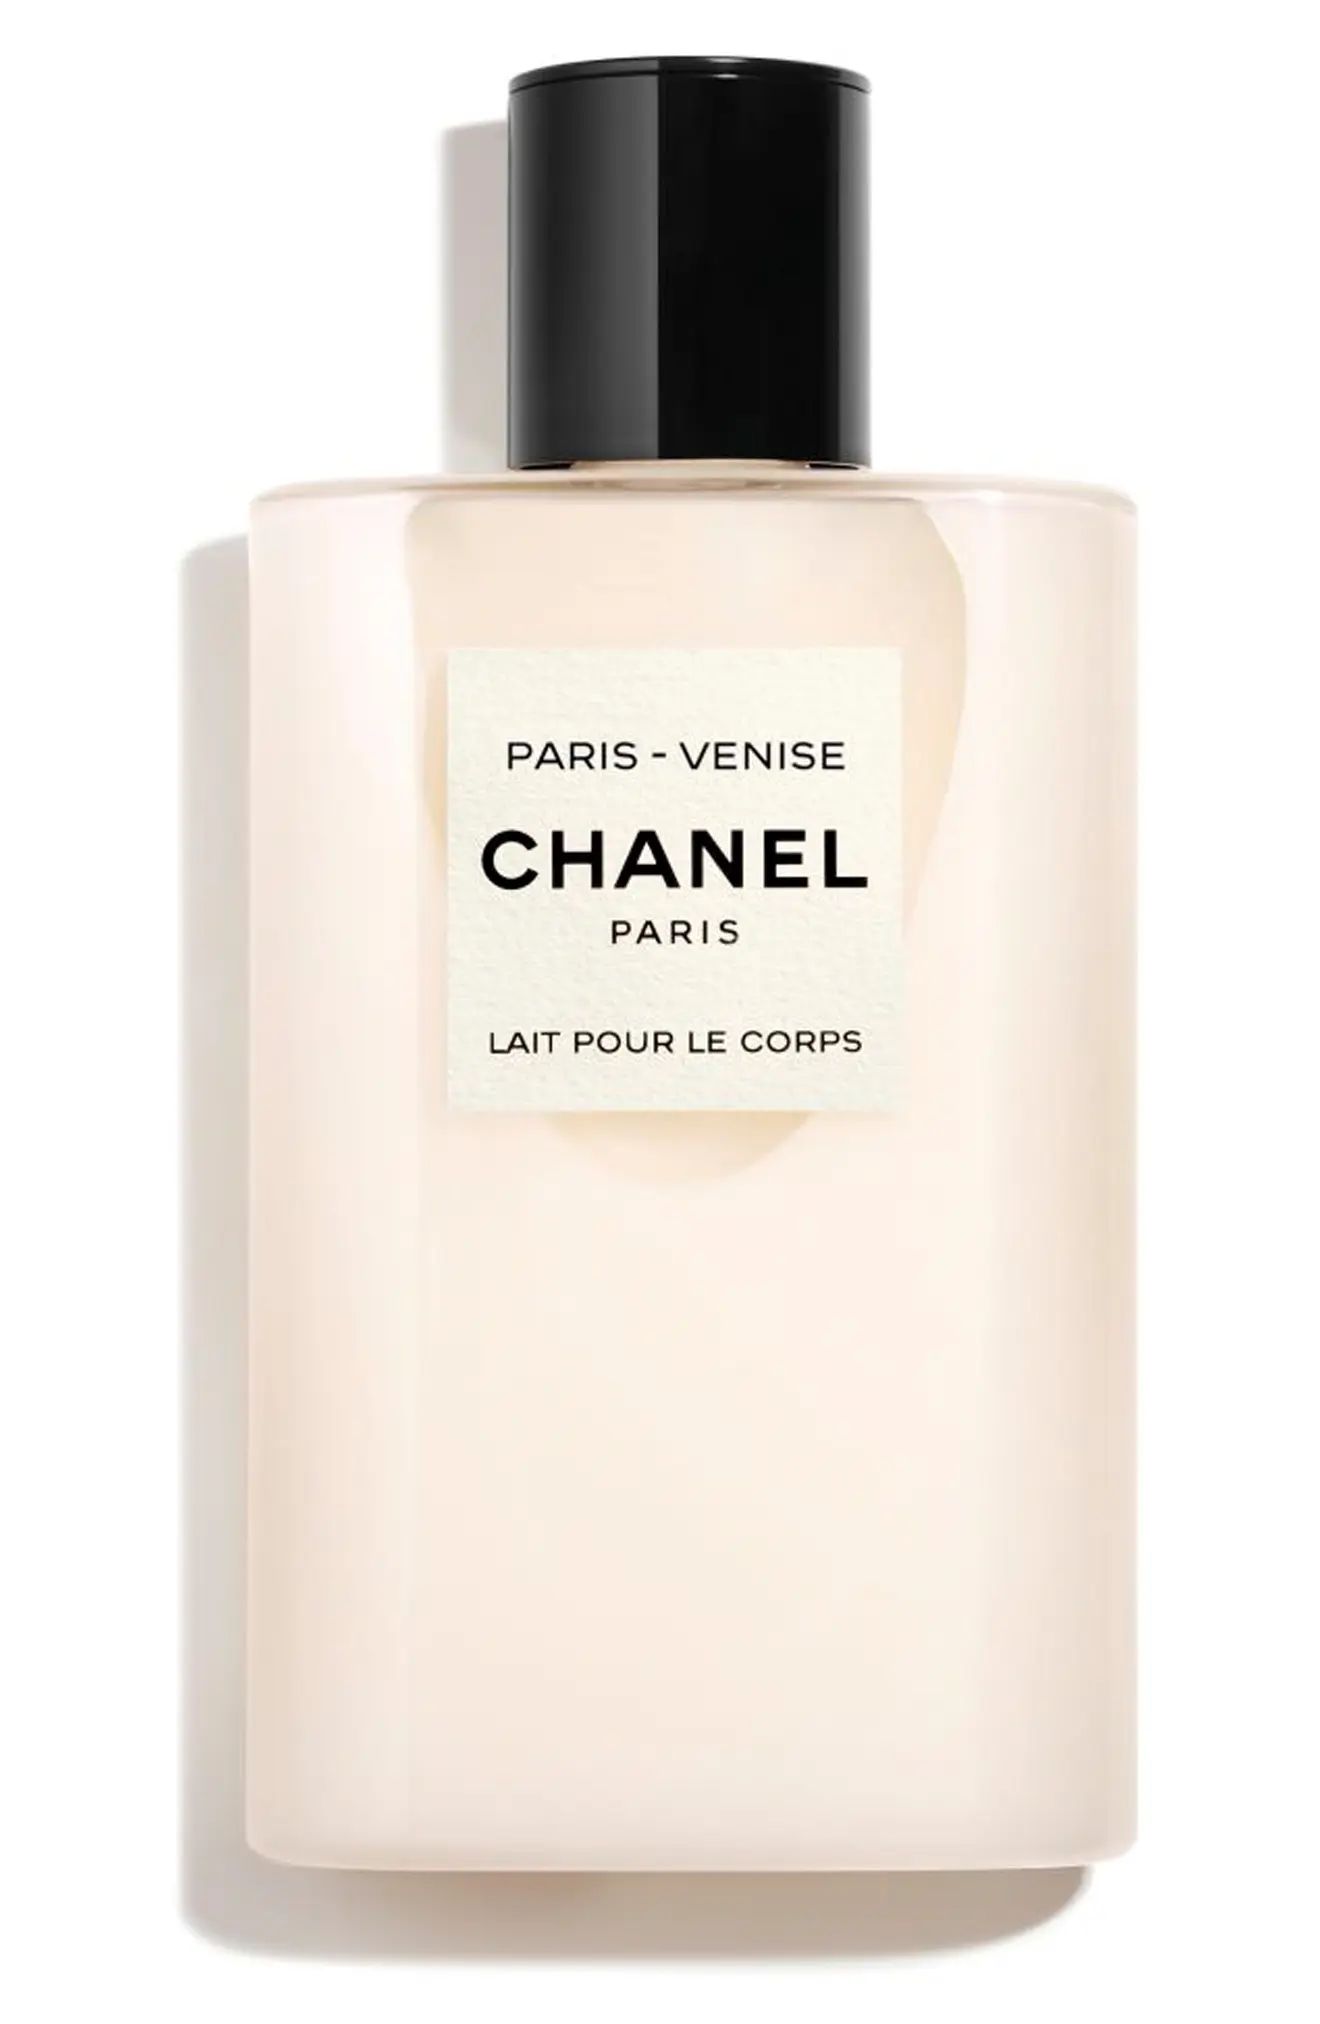 CHANEL LES EAUX DE CHANEL PARIS-VENISE Perfumed Body Lotion (Nordstrom Exclusive) | Nordstrom